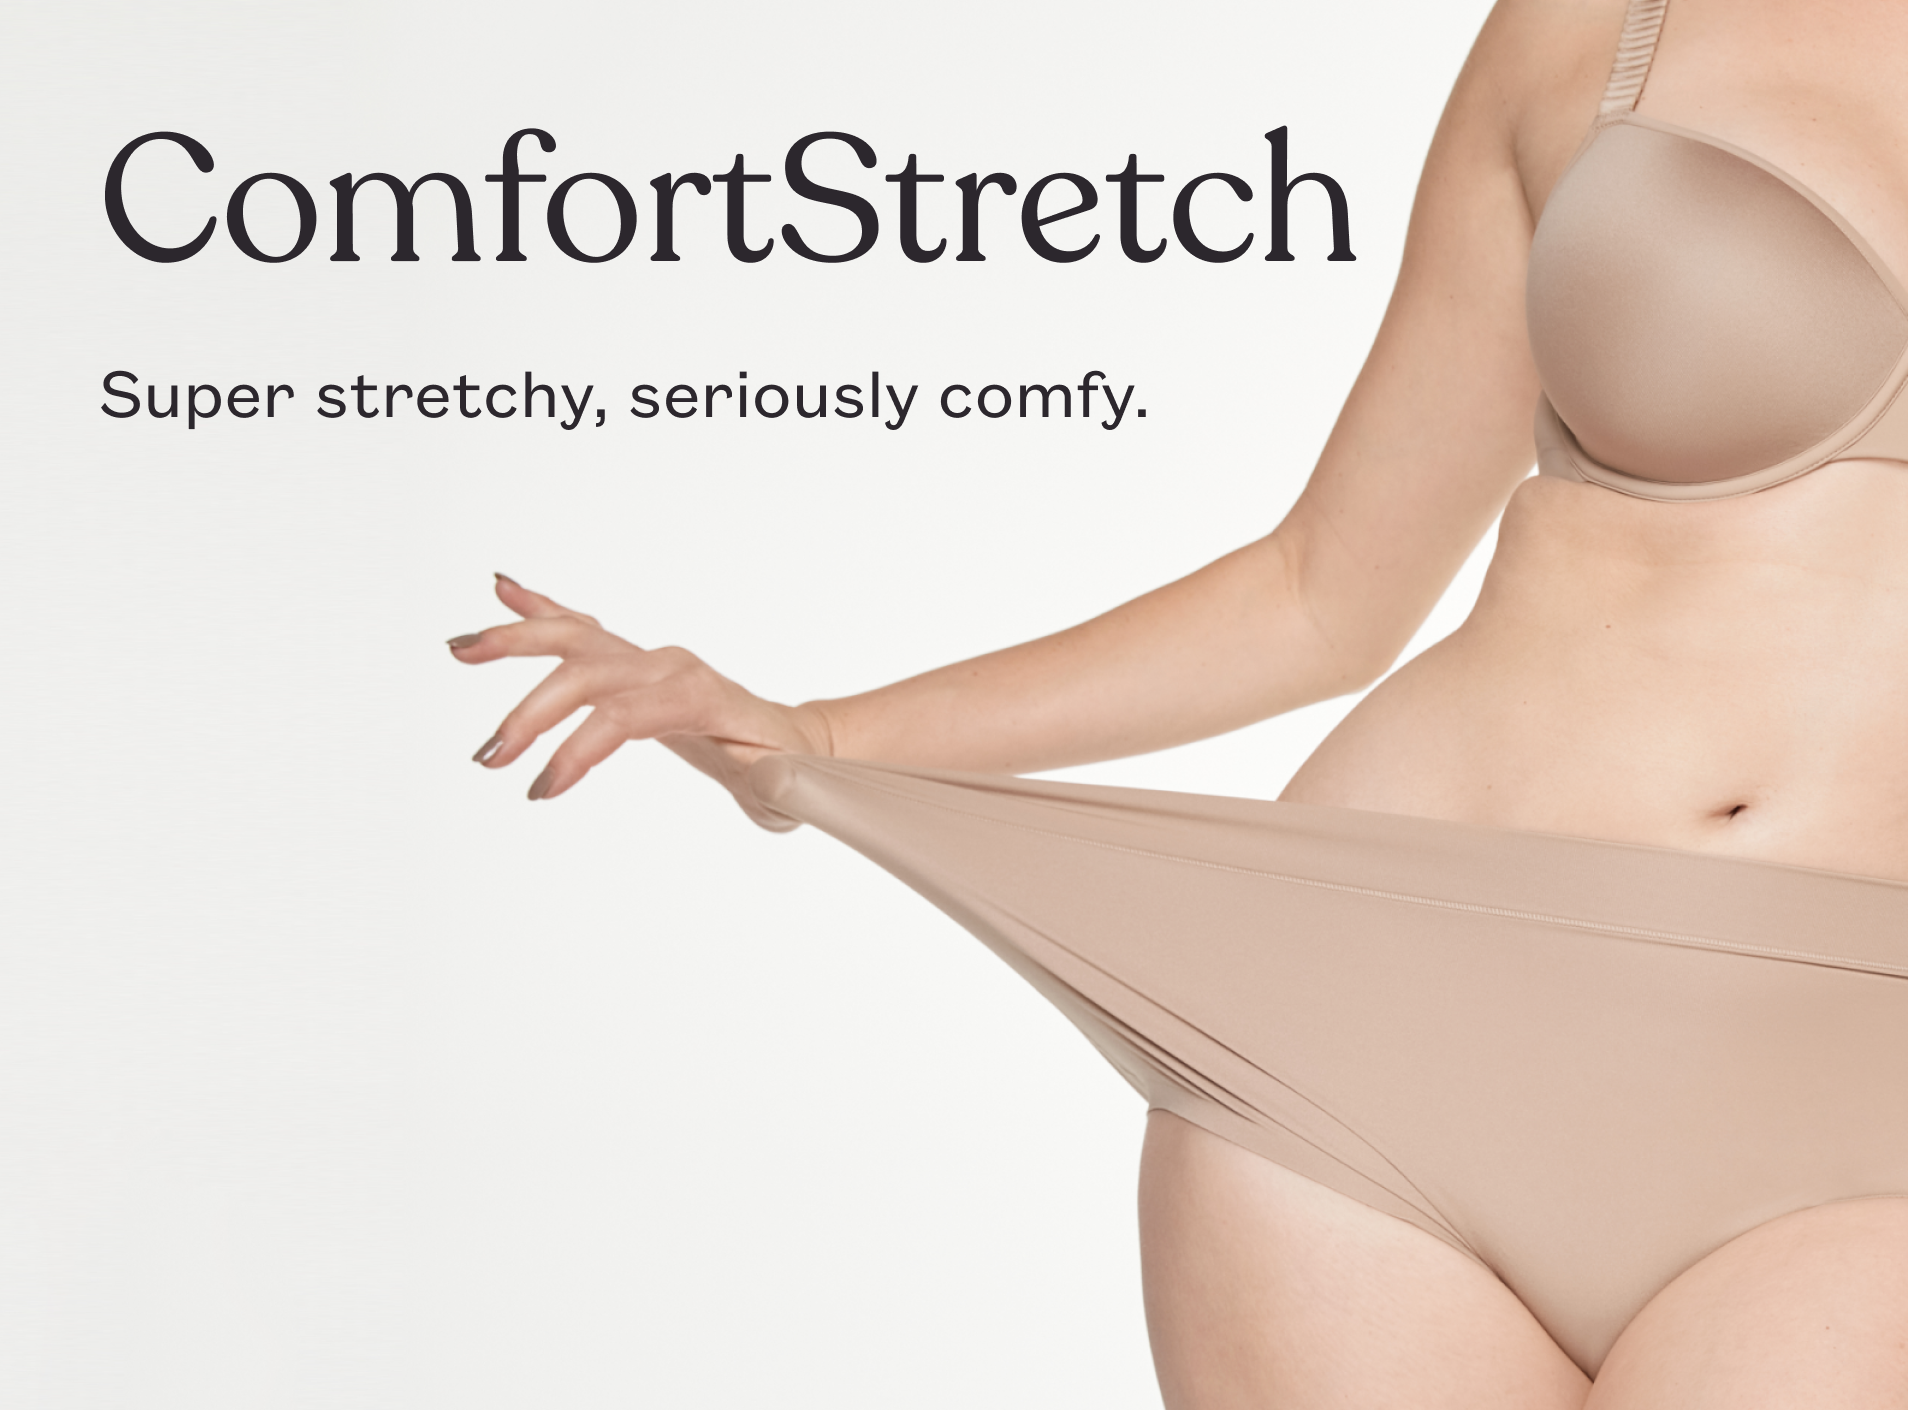 Shop Women\'s Underwear & Panties - Most Comfortable Underwear & Panties For  Women | ThirdLove